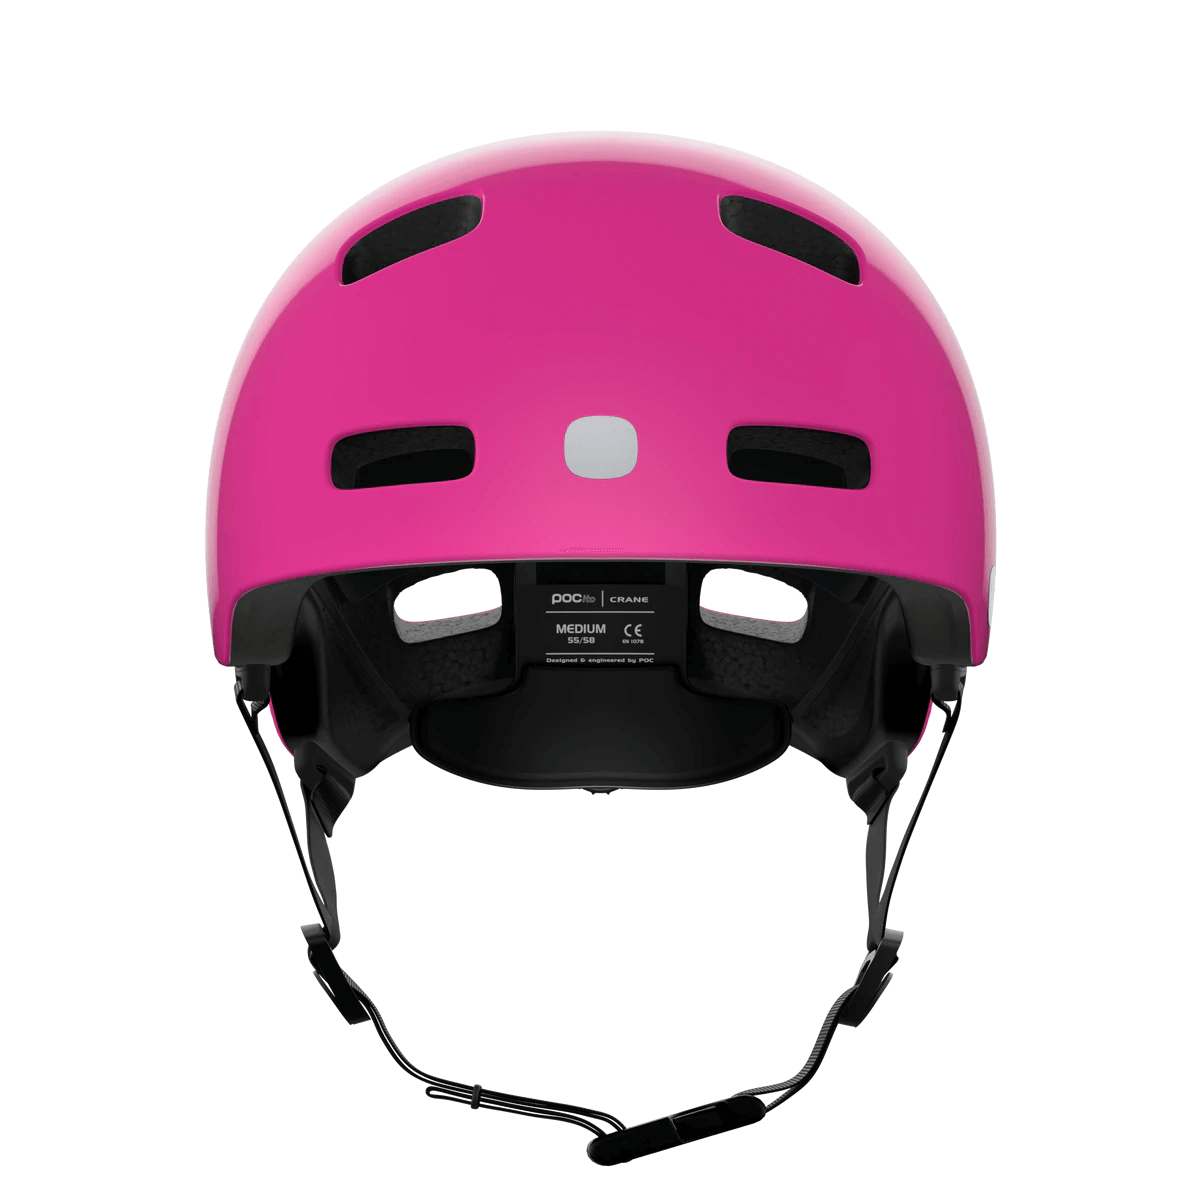 ロードバイク用ヘルメット 10570-1712 ポキートクレーンミップス Pocito Crane Mips - Fluorescent Pink [チャイルド]